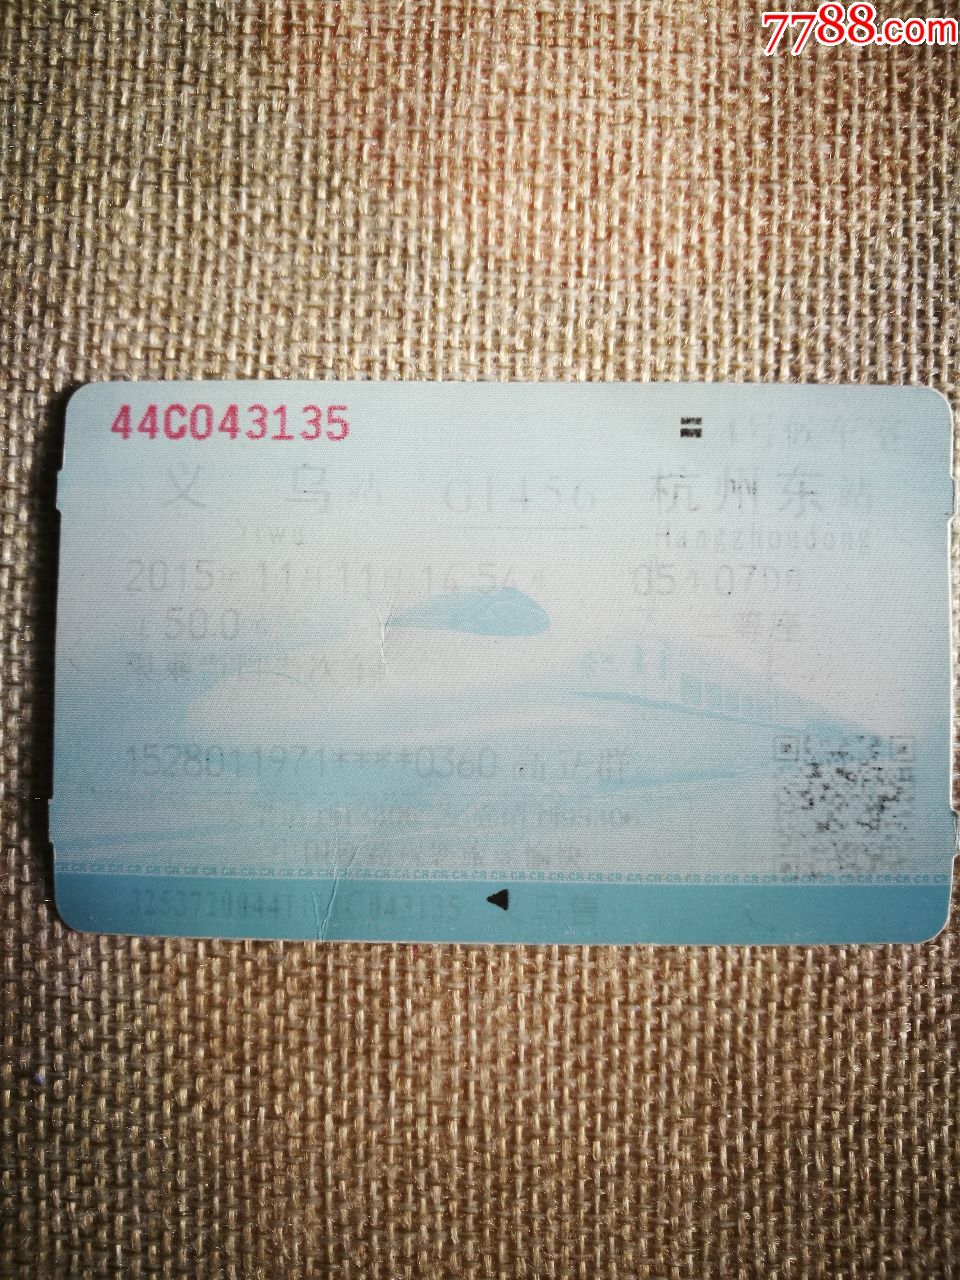 火车票背面照片图片